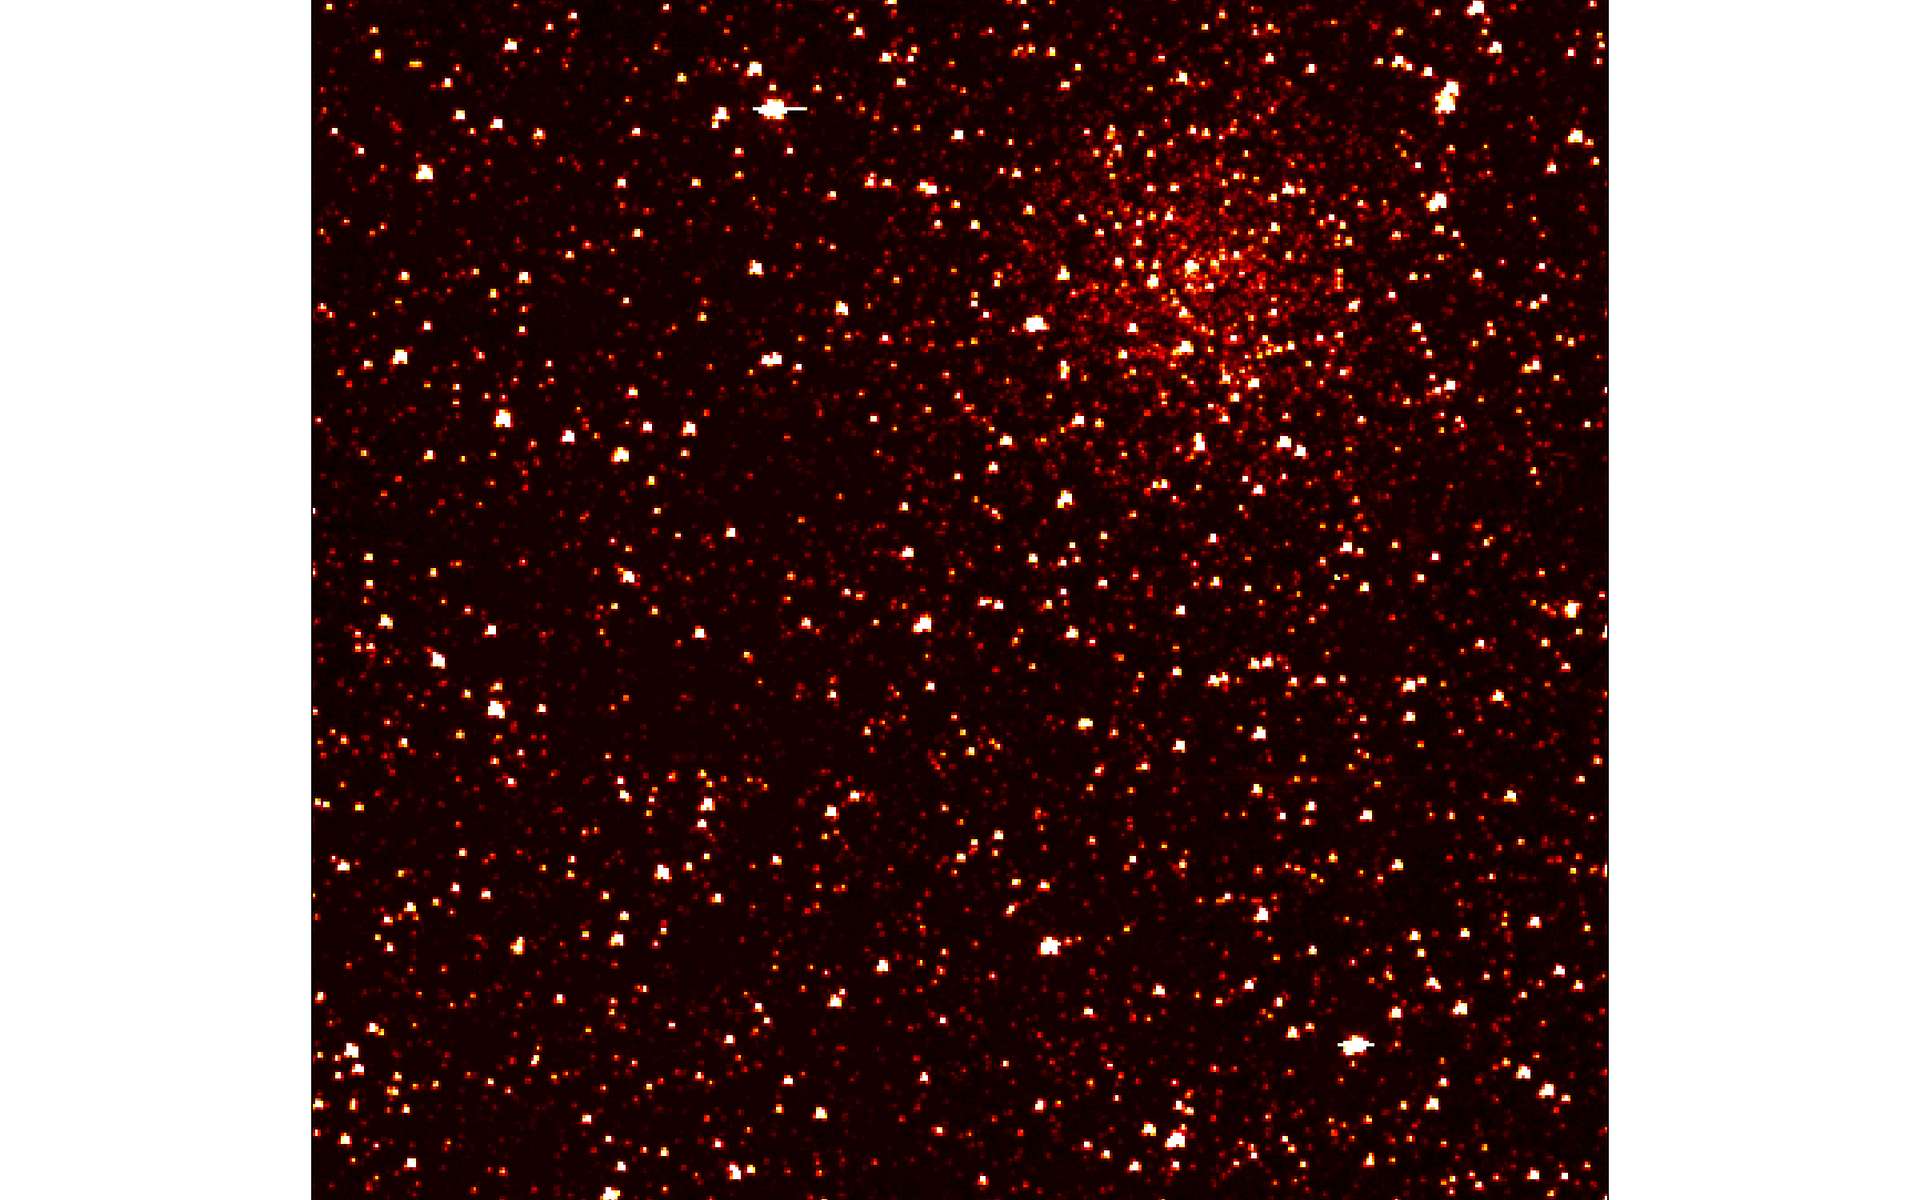 L'amas ouvert NGC 6791, situé à 13.000 années-lumière de la Terre et visible dans la constellation de la Lyre. Il intrigue les astronomes avec sa masse élevée (4.000 masses solaires), son âge canonique (8 milliards d'années) et son exceptionnelle richesse en fer. NGC 6791 ne figure pas parmi les objets d'étude de la mission Kepler mais sa célébrité méritait d'en faire un portrait pour les premières images de l'instrument. © Nasa